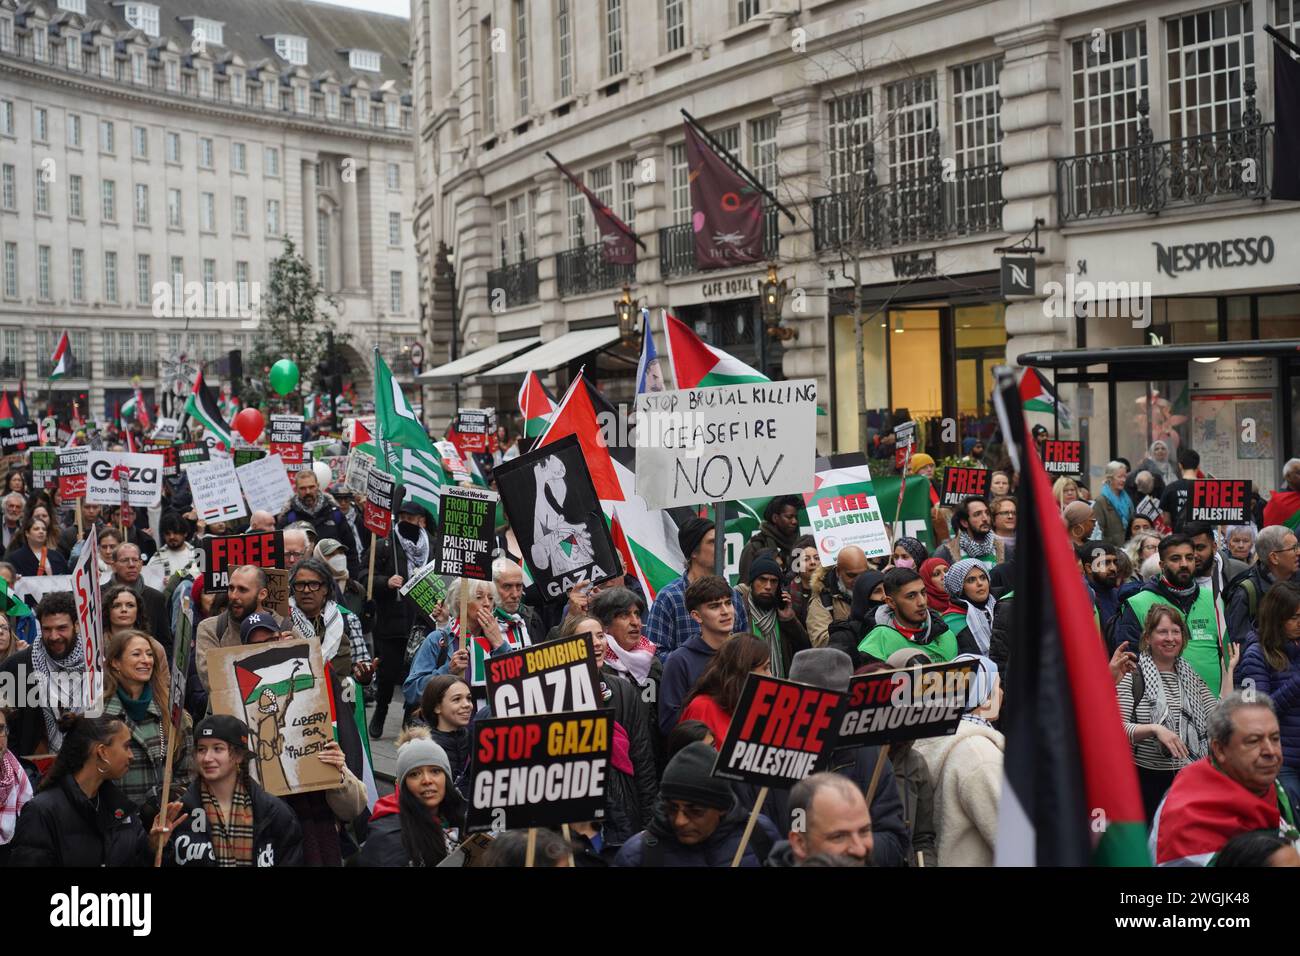 Hunderttausende marschieren auf dem Nationalmarsch für Palästina in London und fordern einen dauerhaften Waffenstillstand in Gaza und ein Ende der israelischen Belagerung von Gaza. Stockfoto